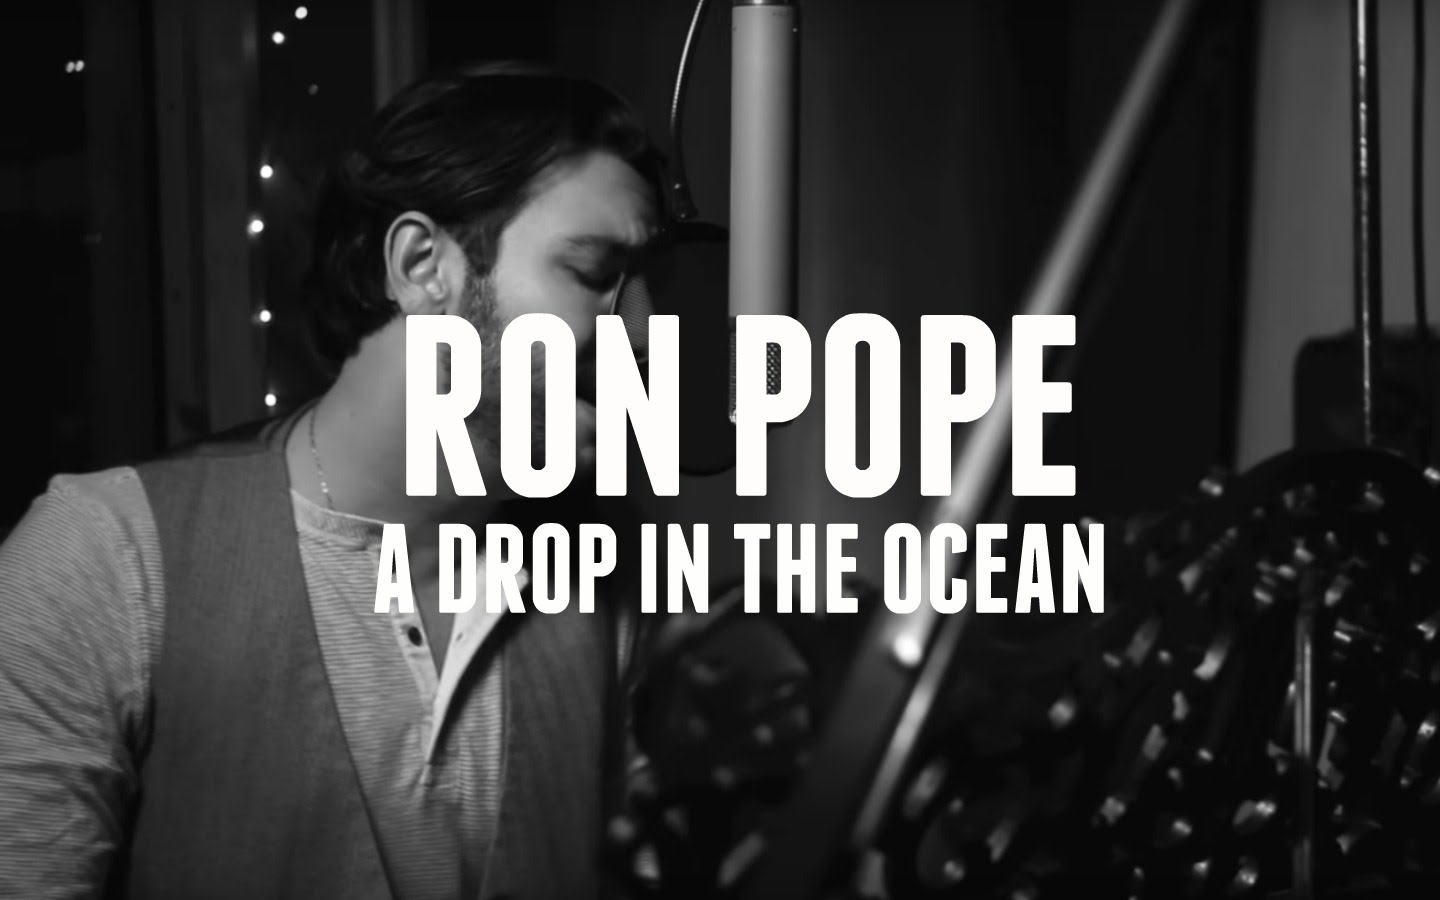 a drop in the ocean